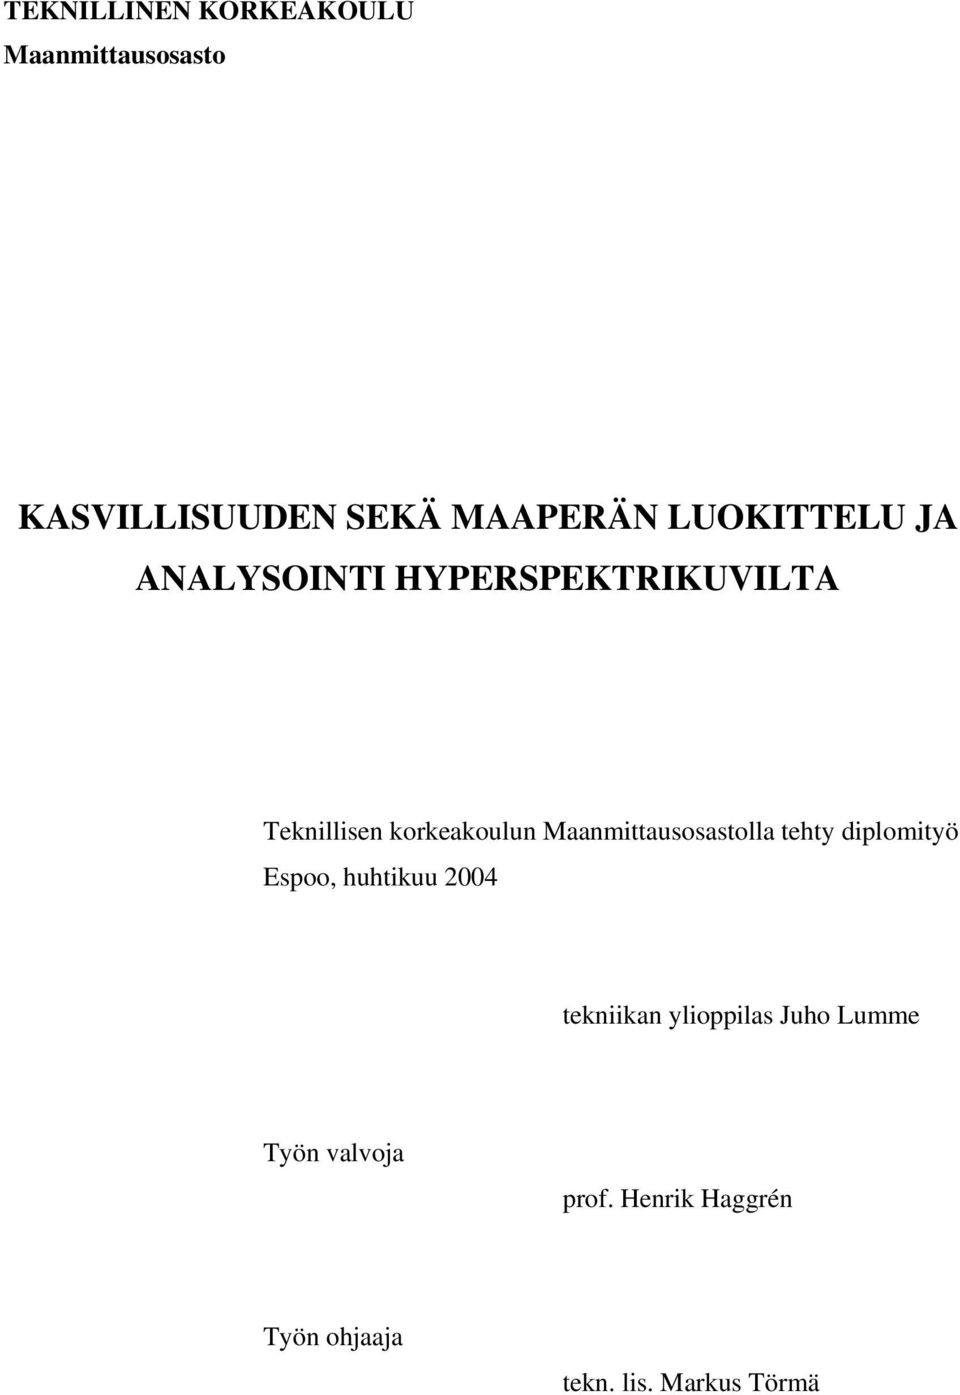 Maanmittausosastolla tehty diplomityö Espoo, huhtikuu 2004 tekniikan